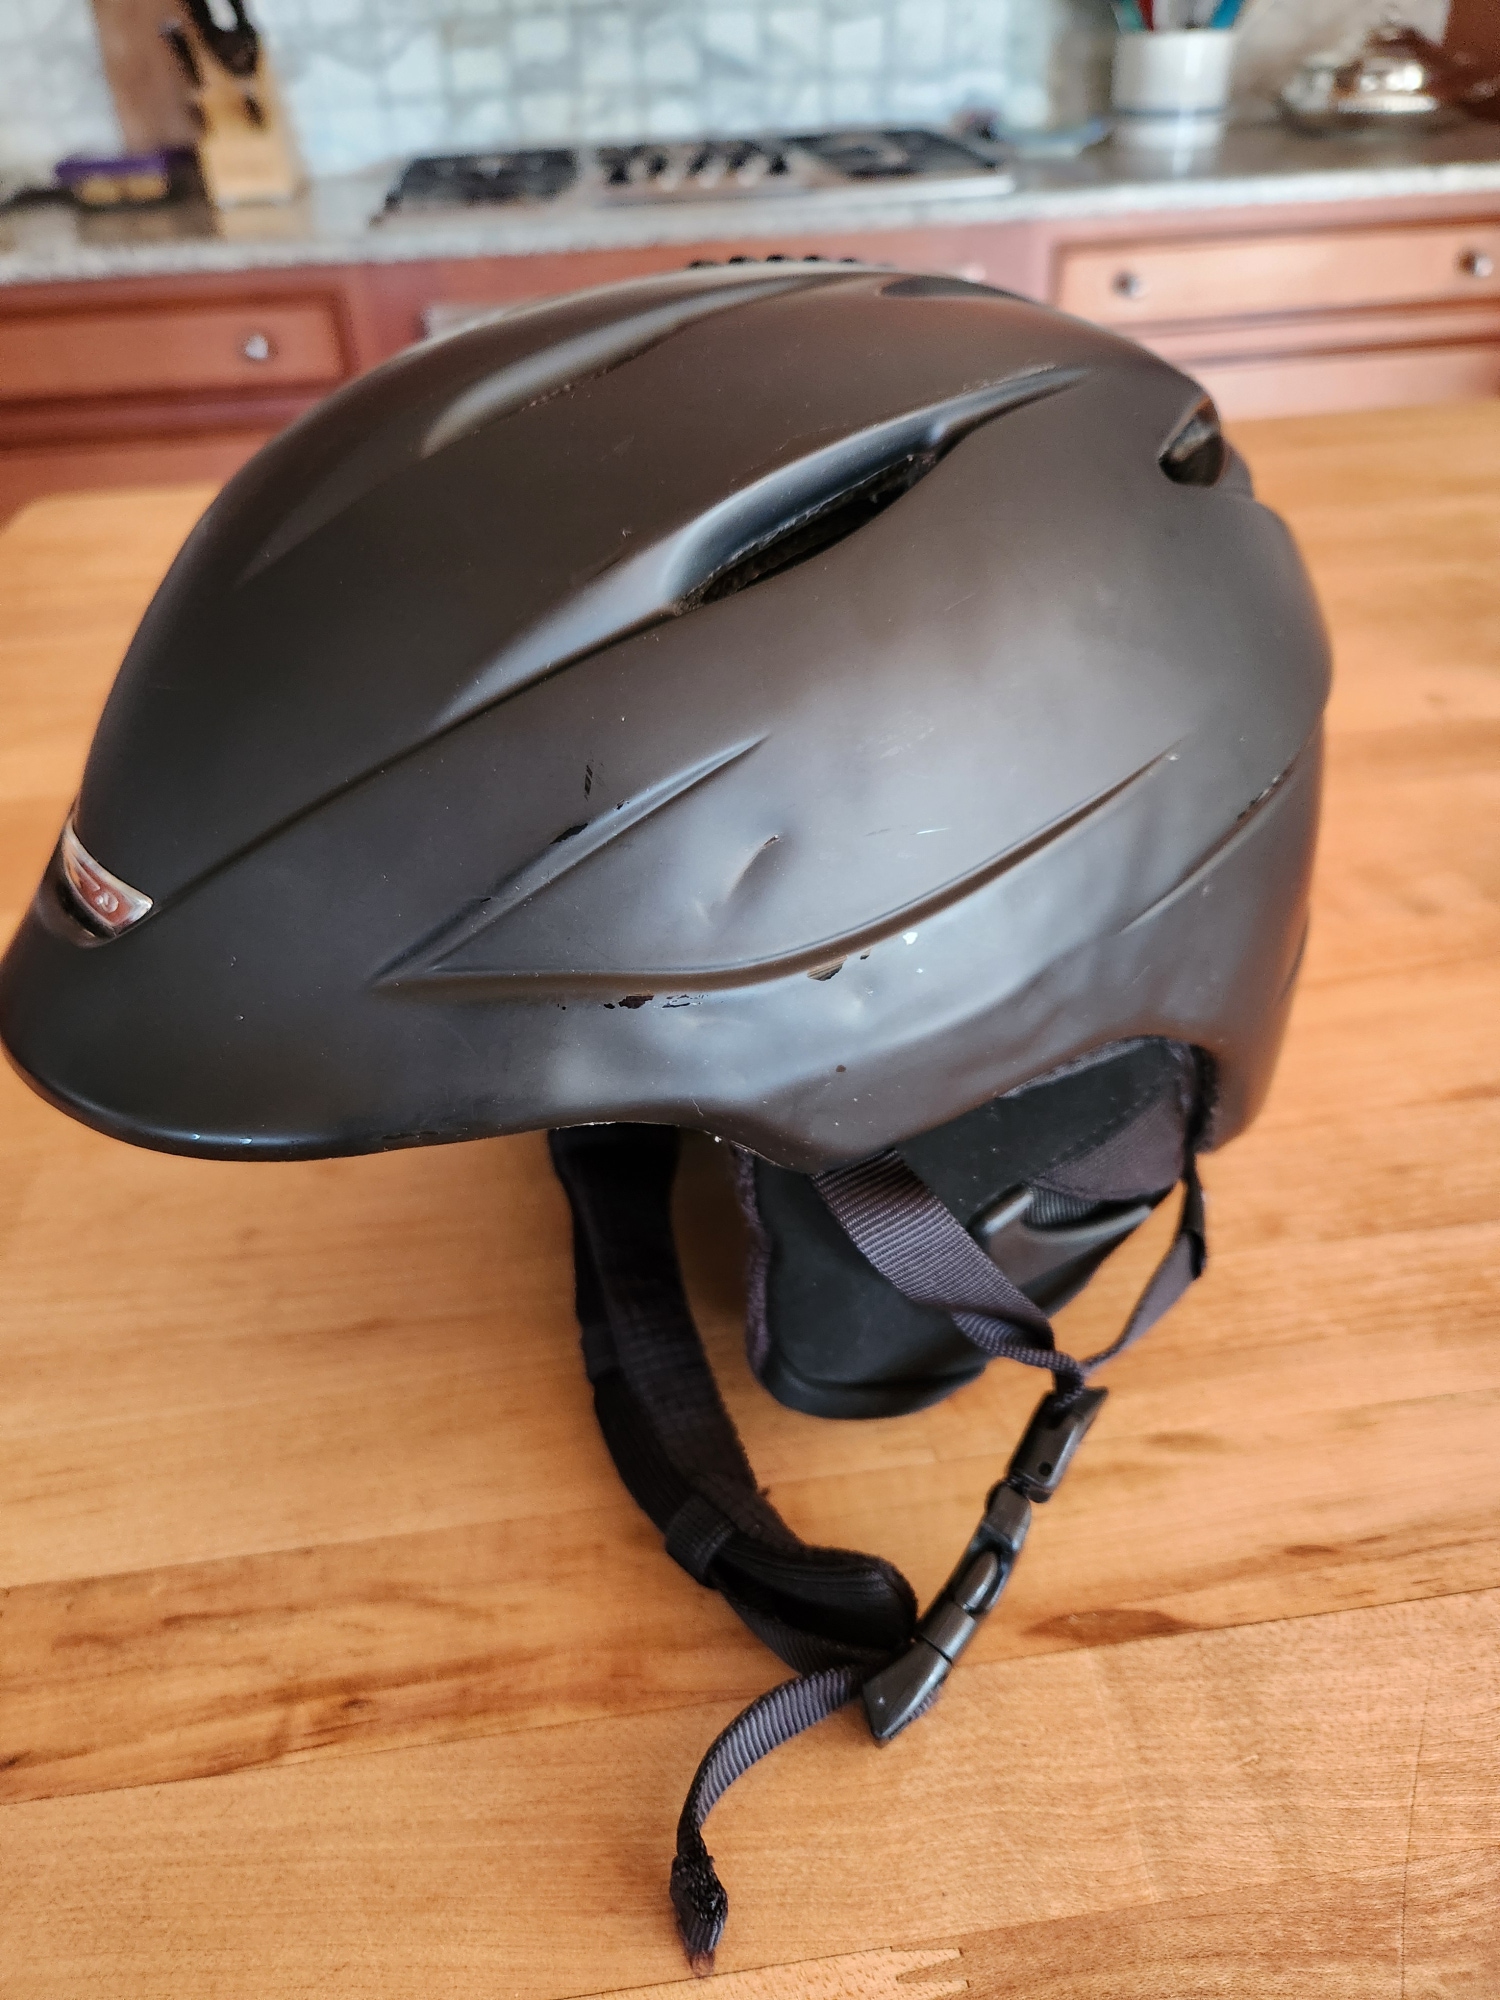 Used Unisex Medium Giro Seam Helmet